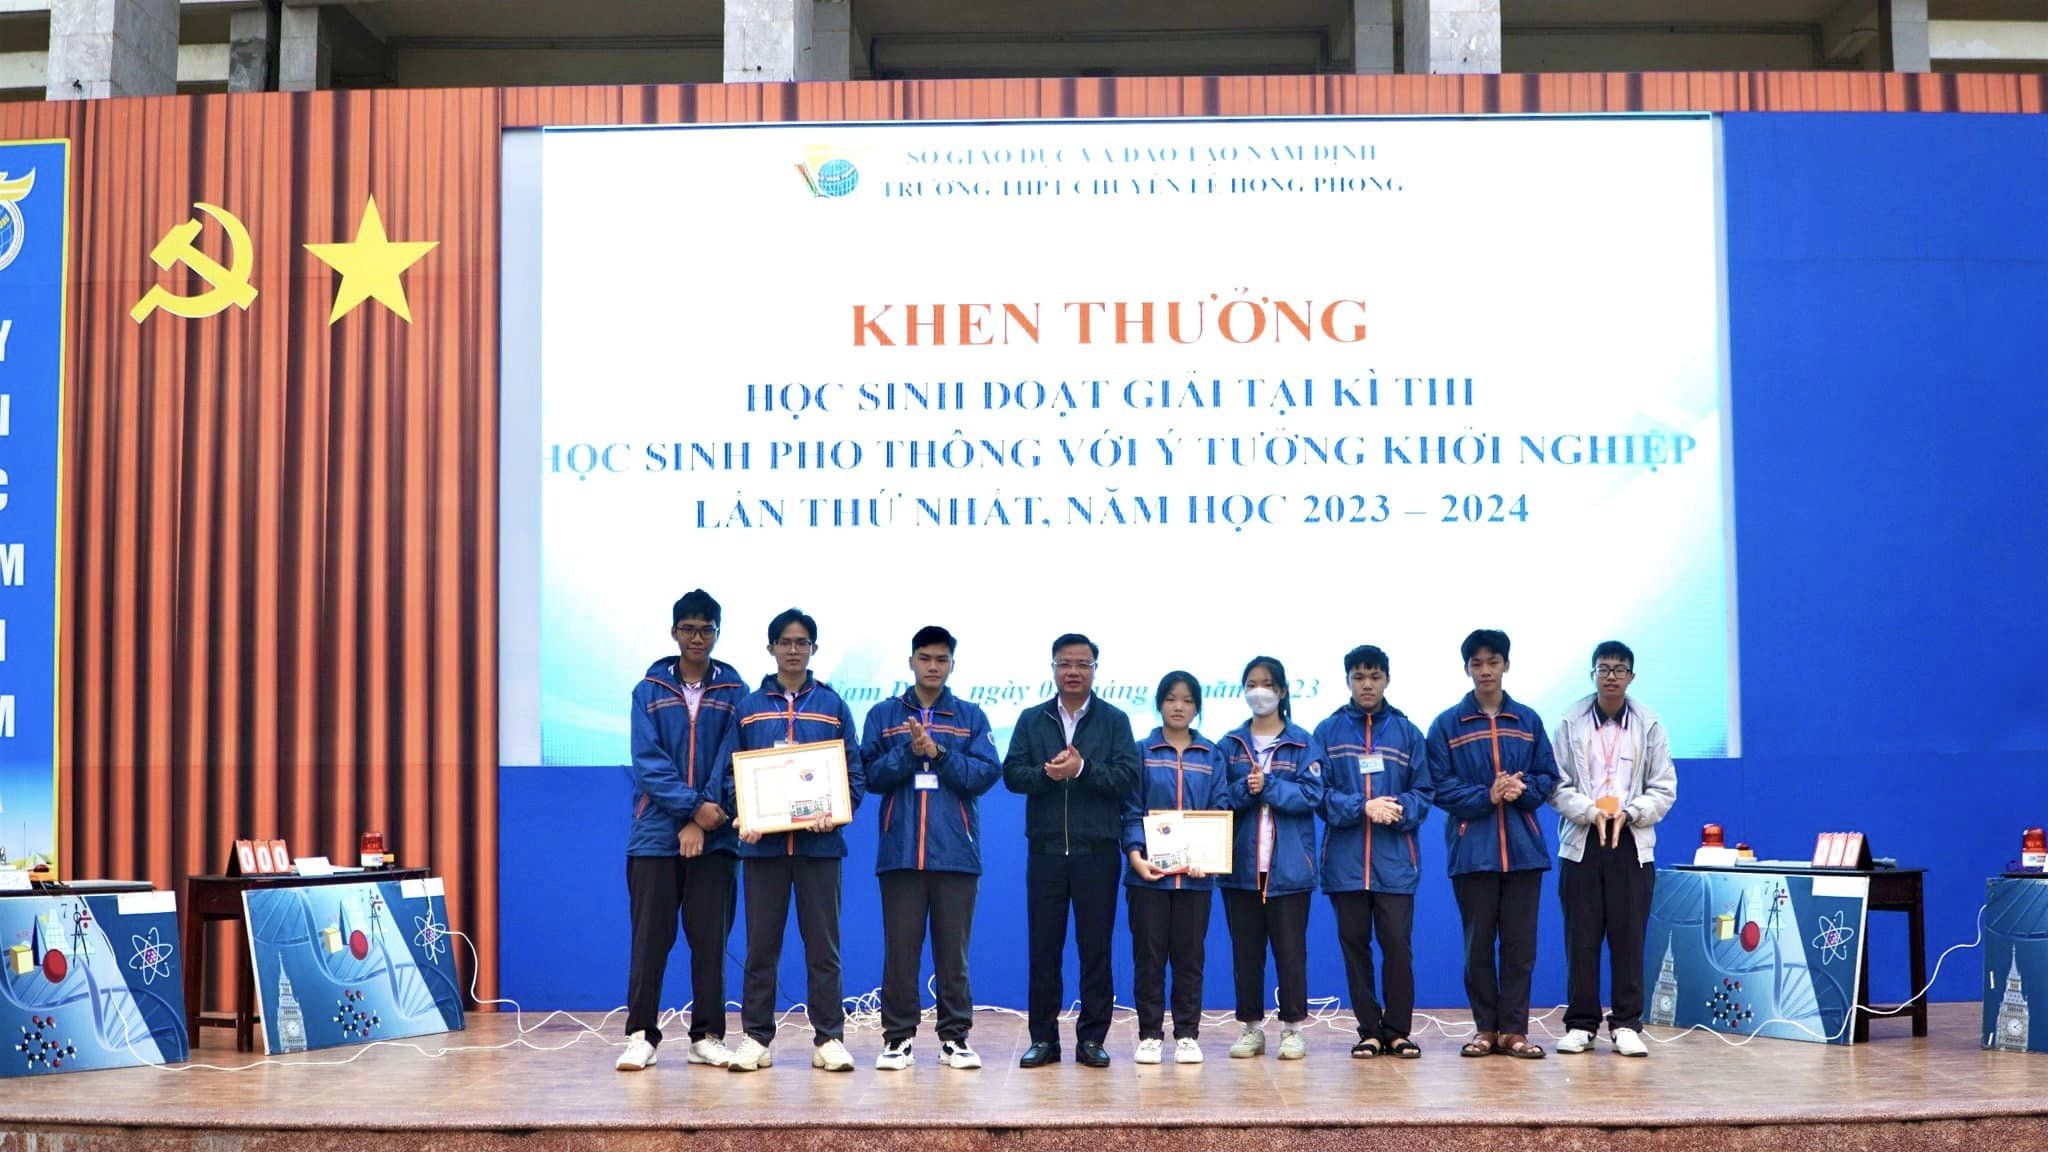 Học sinh trường THPT chuyên Lê Hồng Phong đoạt giải tại Cuộc thi “Học sinh phổ thông với ý tưởng khởi nghiệp”